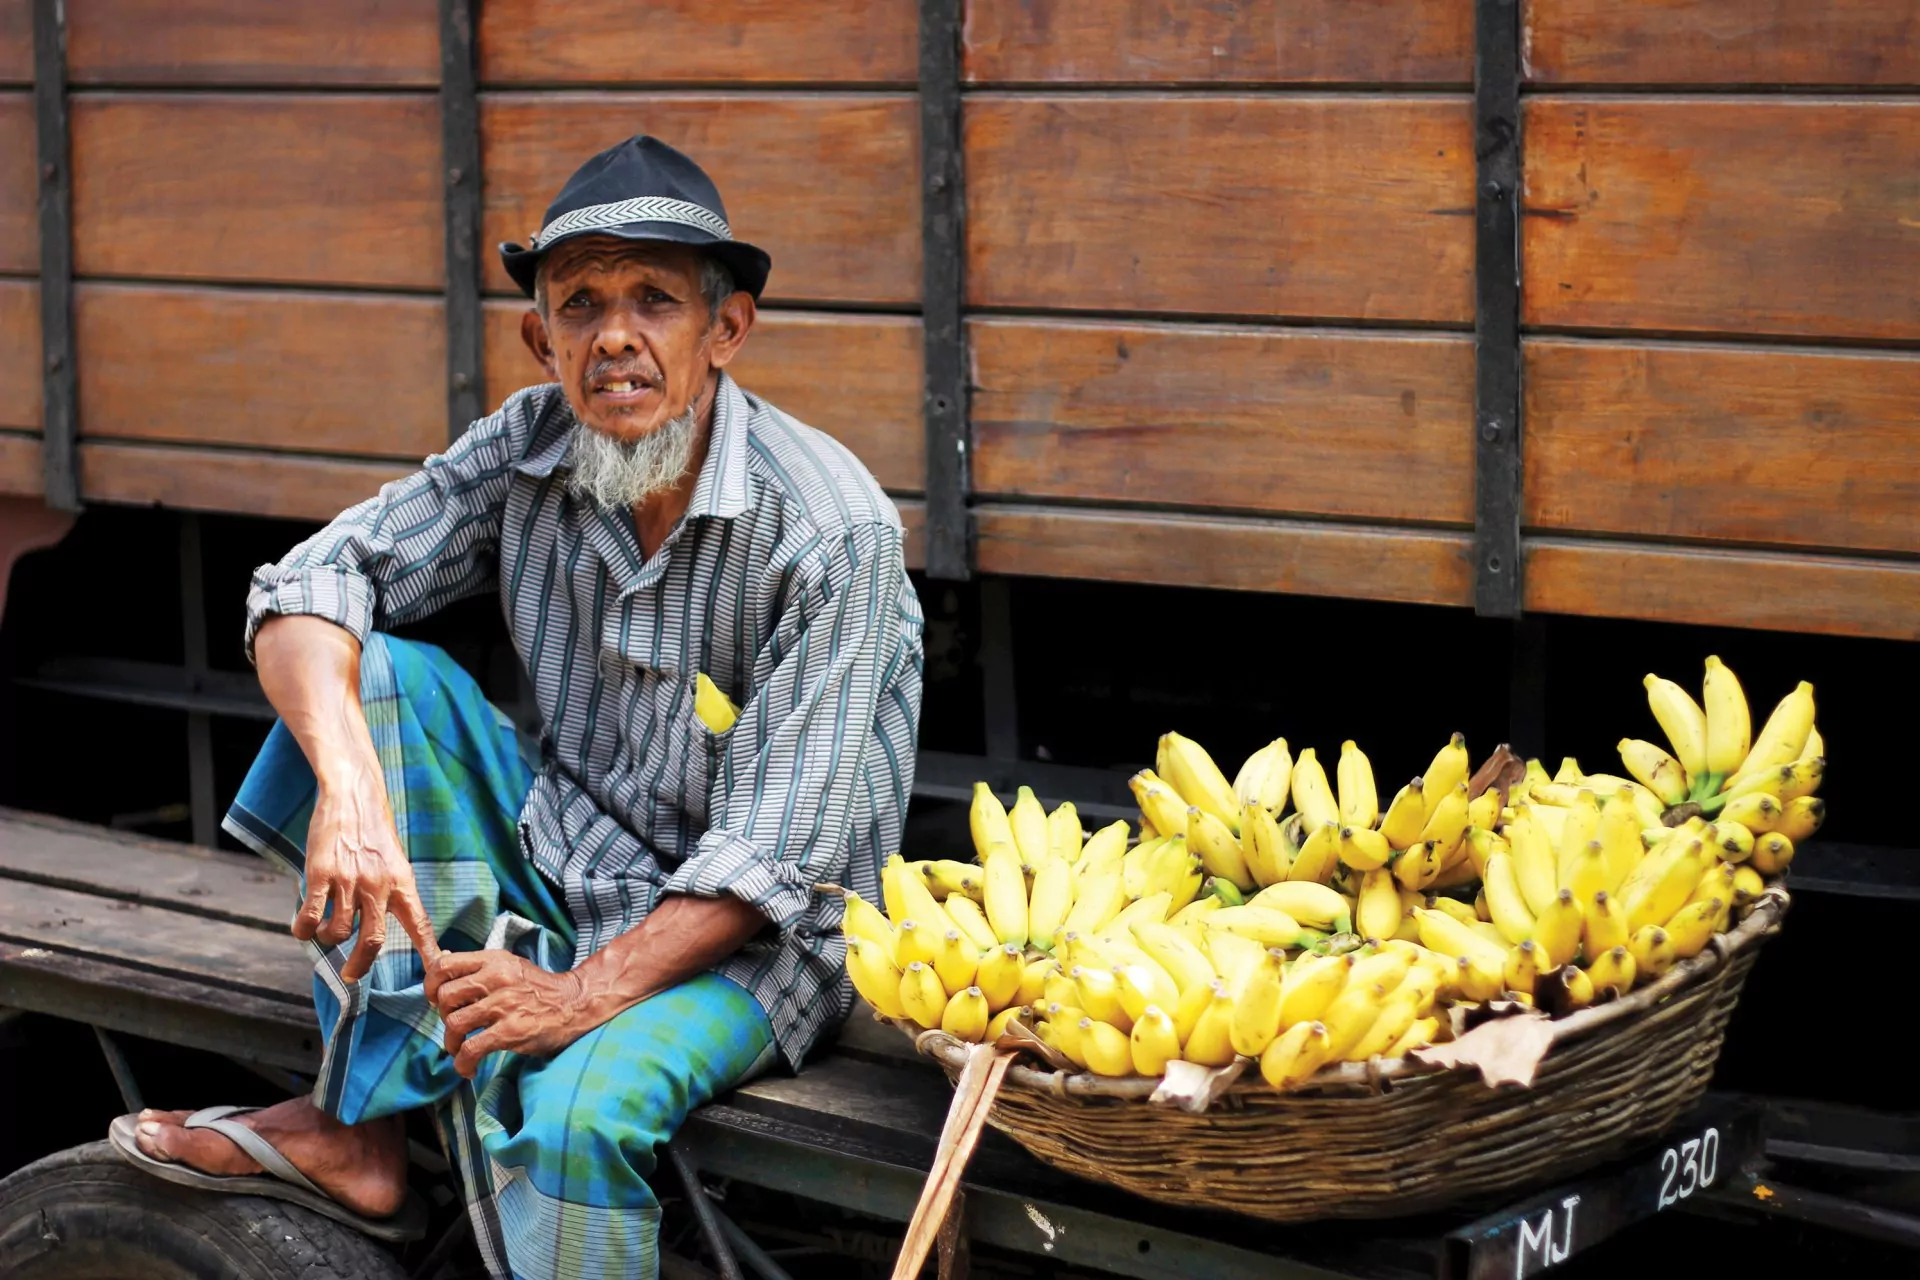 Sri_Lanka_Rundreisen_Colombo_Markt_Bananen